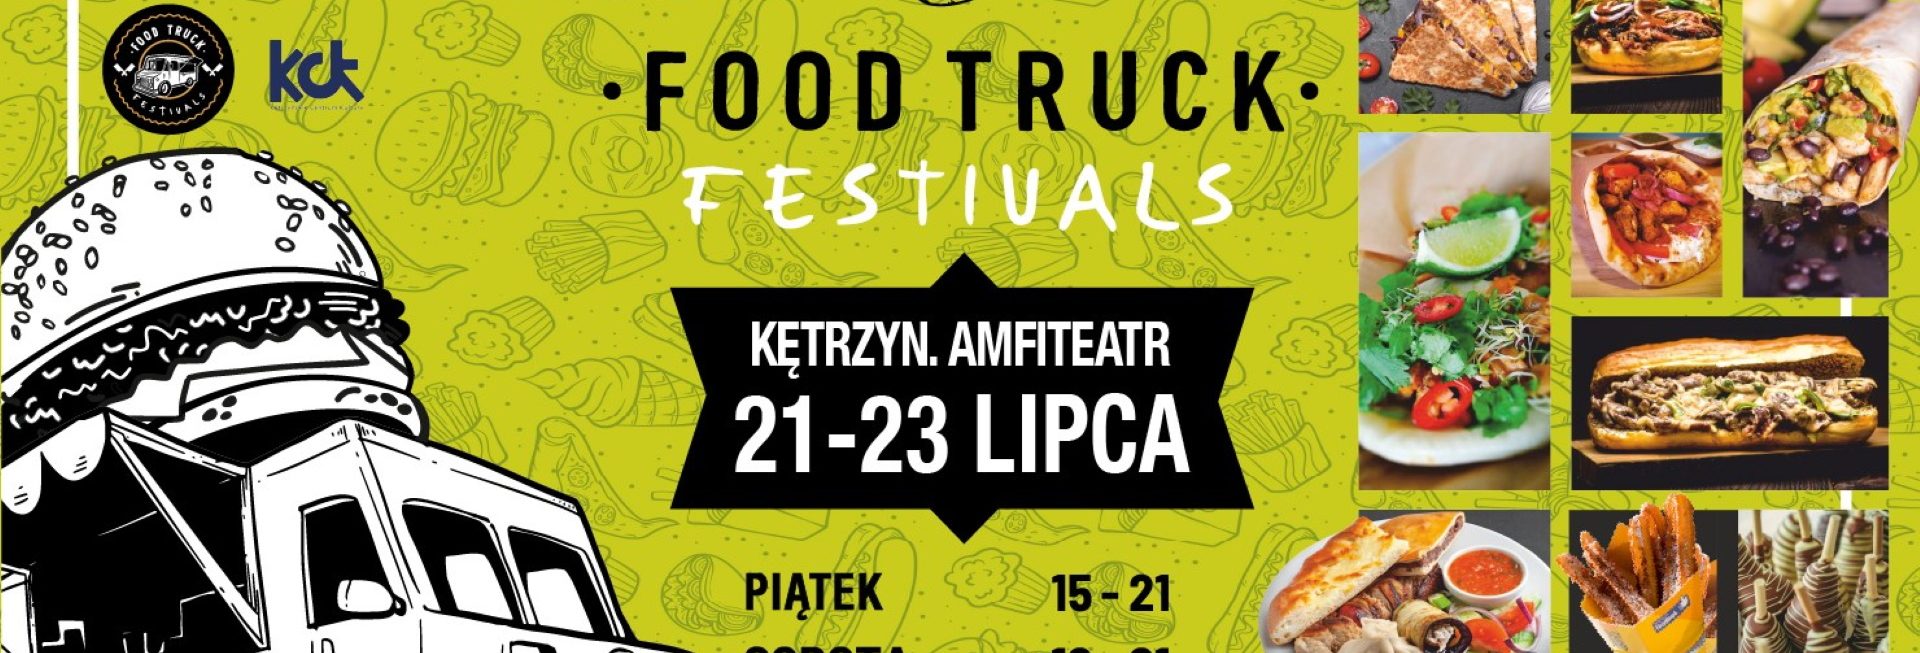 Plakat zapraszający w dniach 21-23 lipca 2023 r. do Kętrzyna na Food Truck Festivals Kętrzyn 2023.